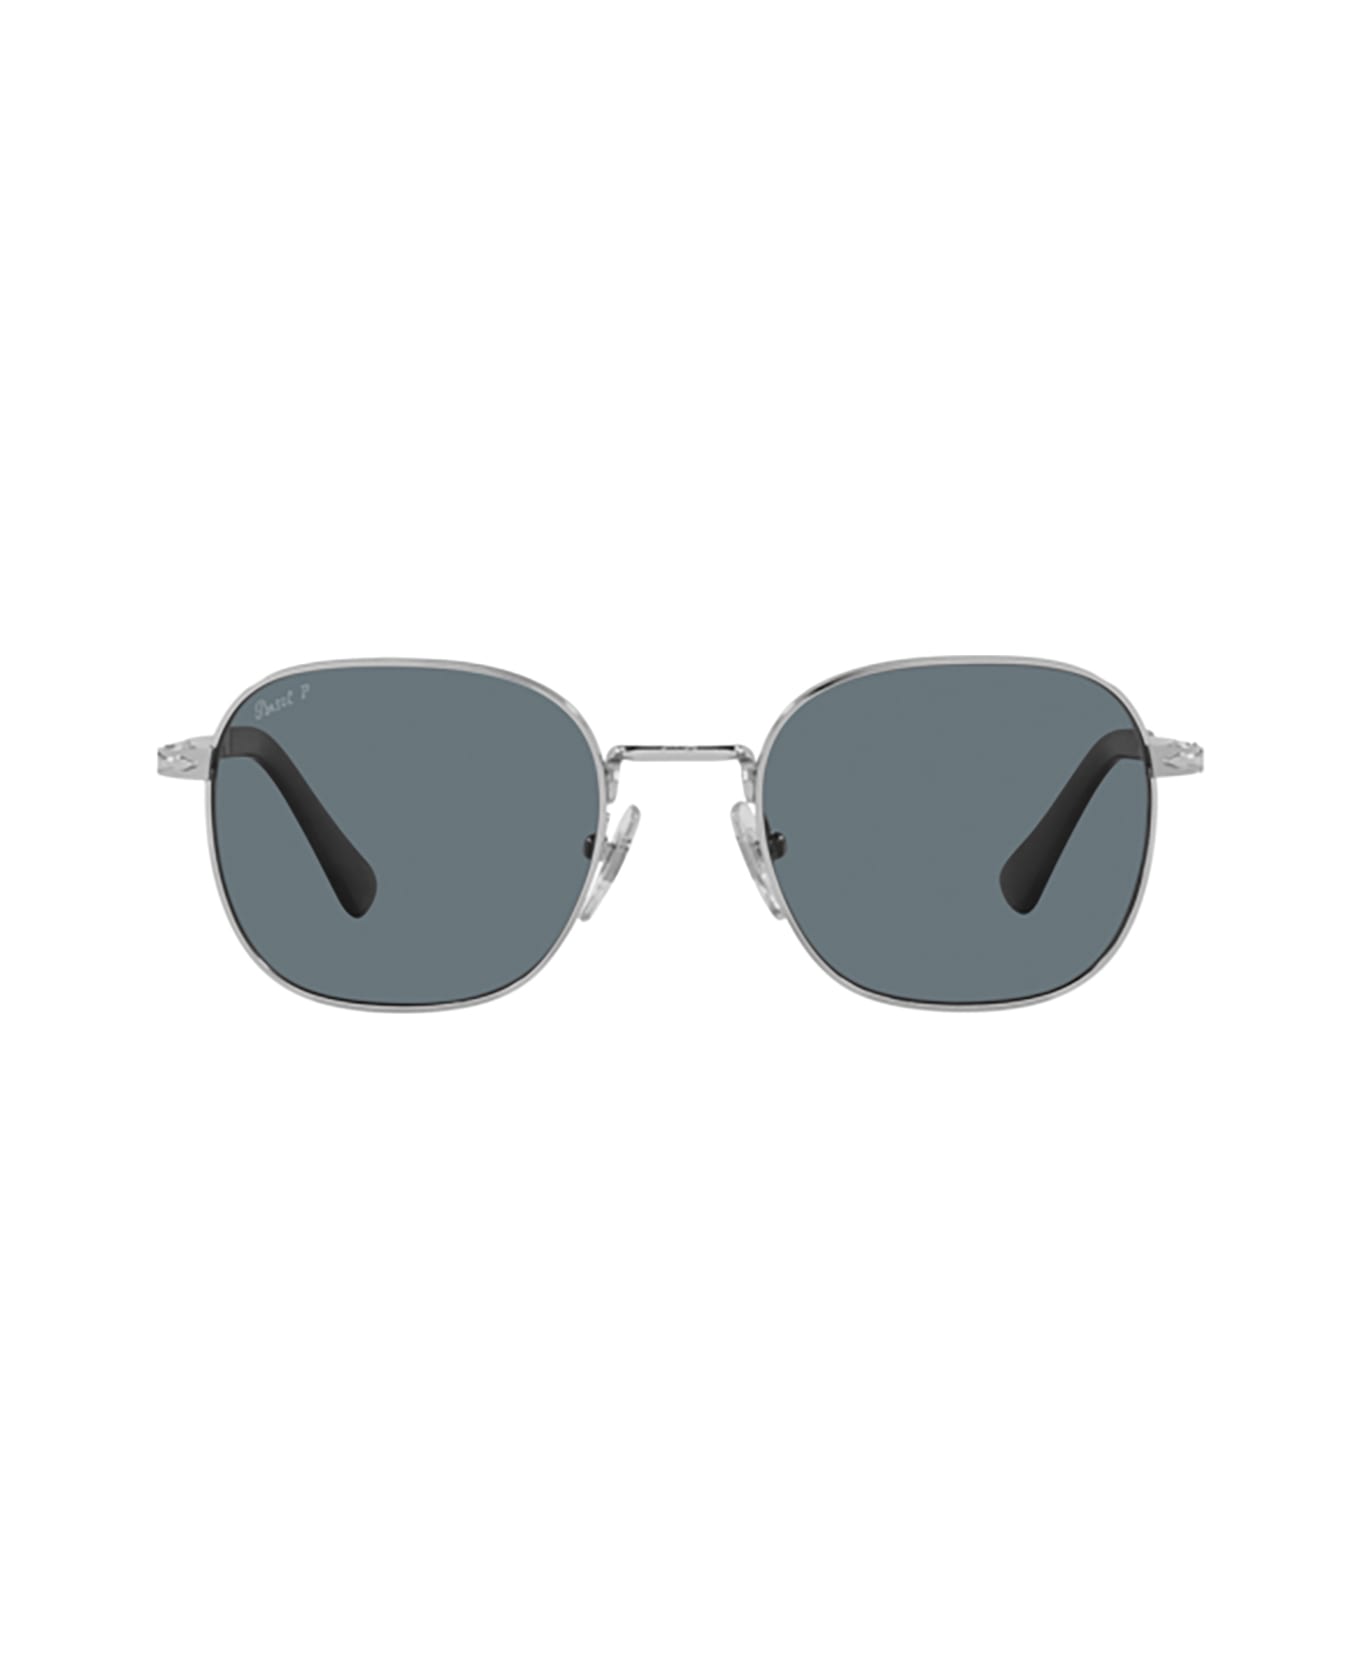 Persol Po1009s Silver Sunglasses - Silver サングラス